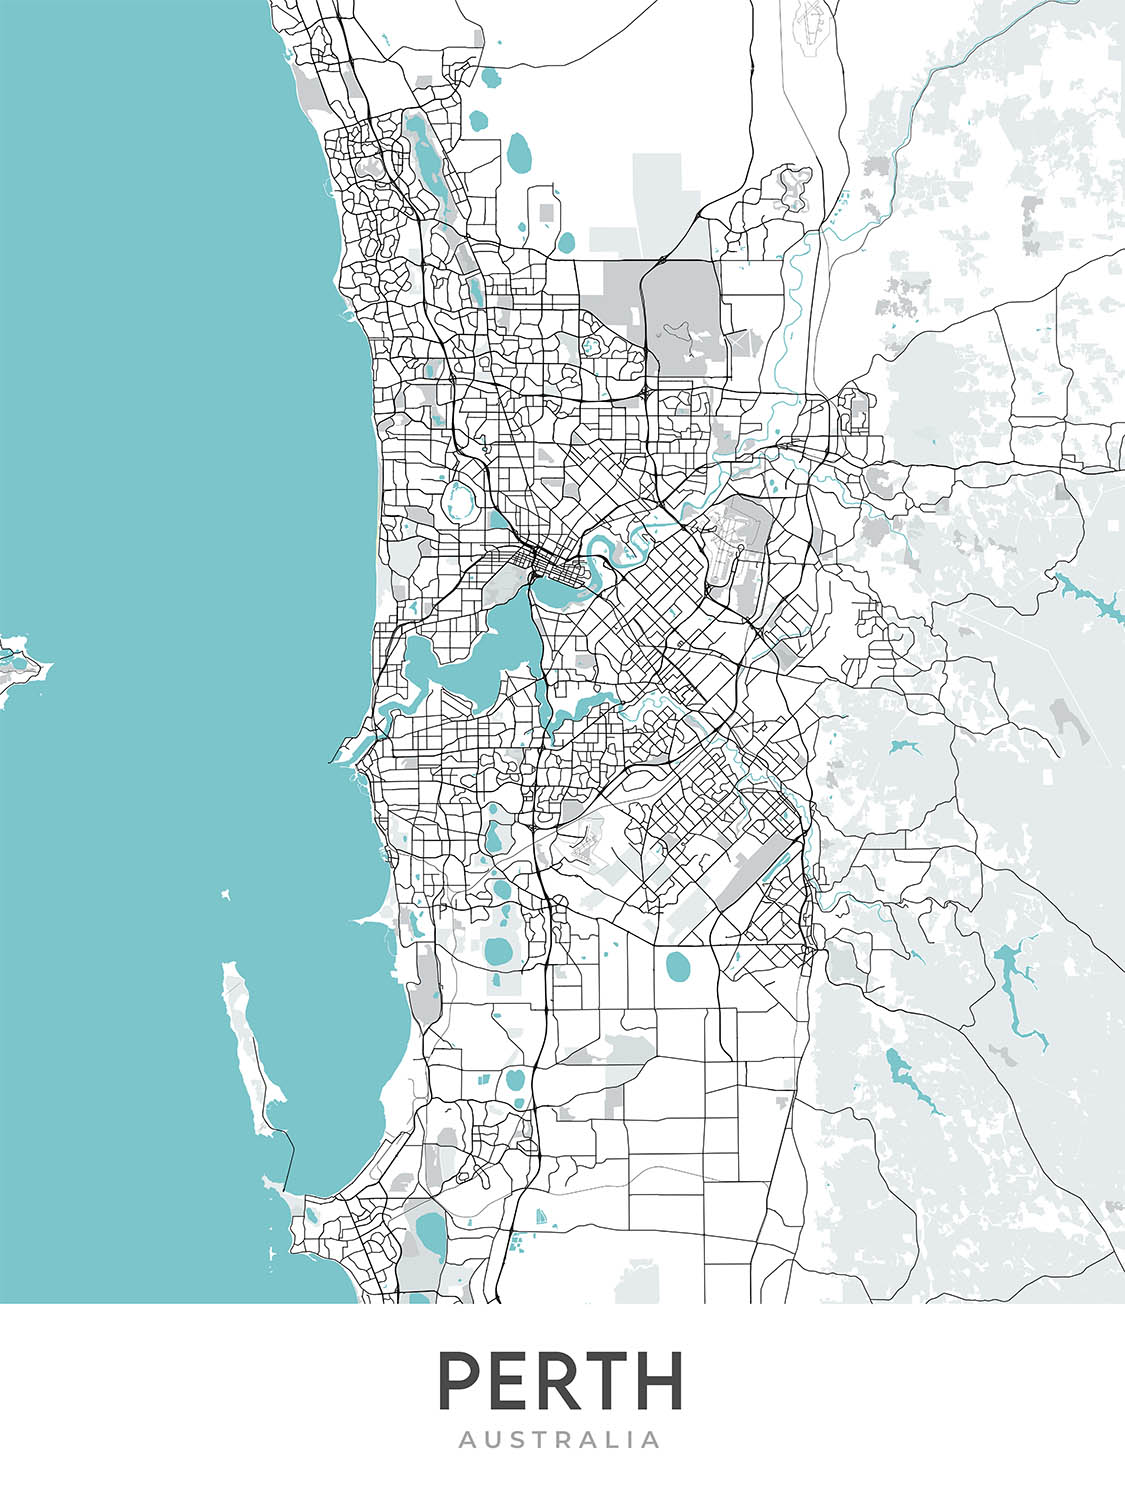 Moderner Stadtplan von Perth, Australien: CBD, Kings Park, Swan River, Optus Stadium, Mitchell Fwy